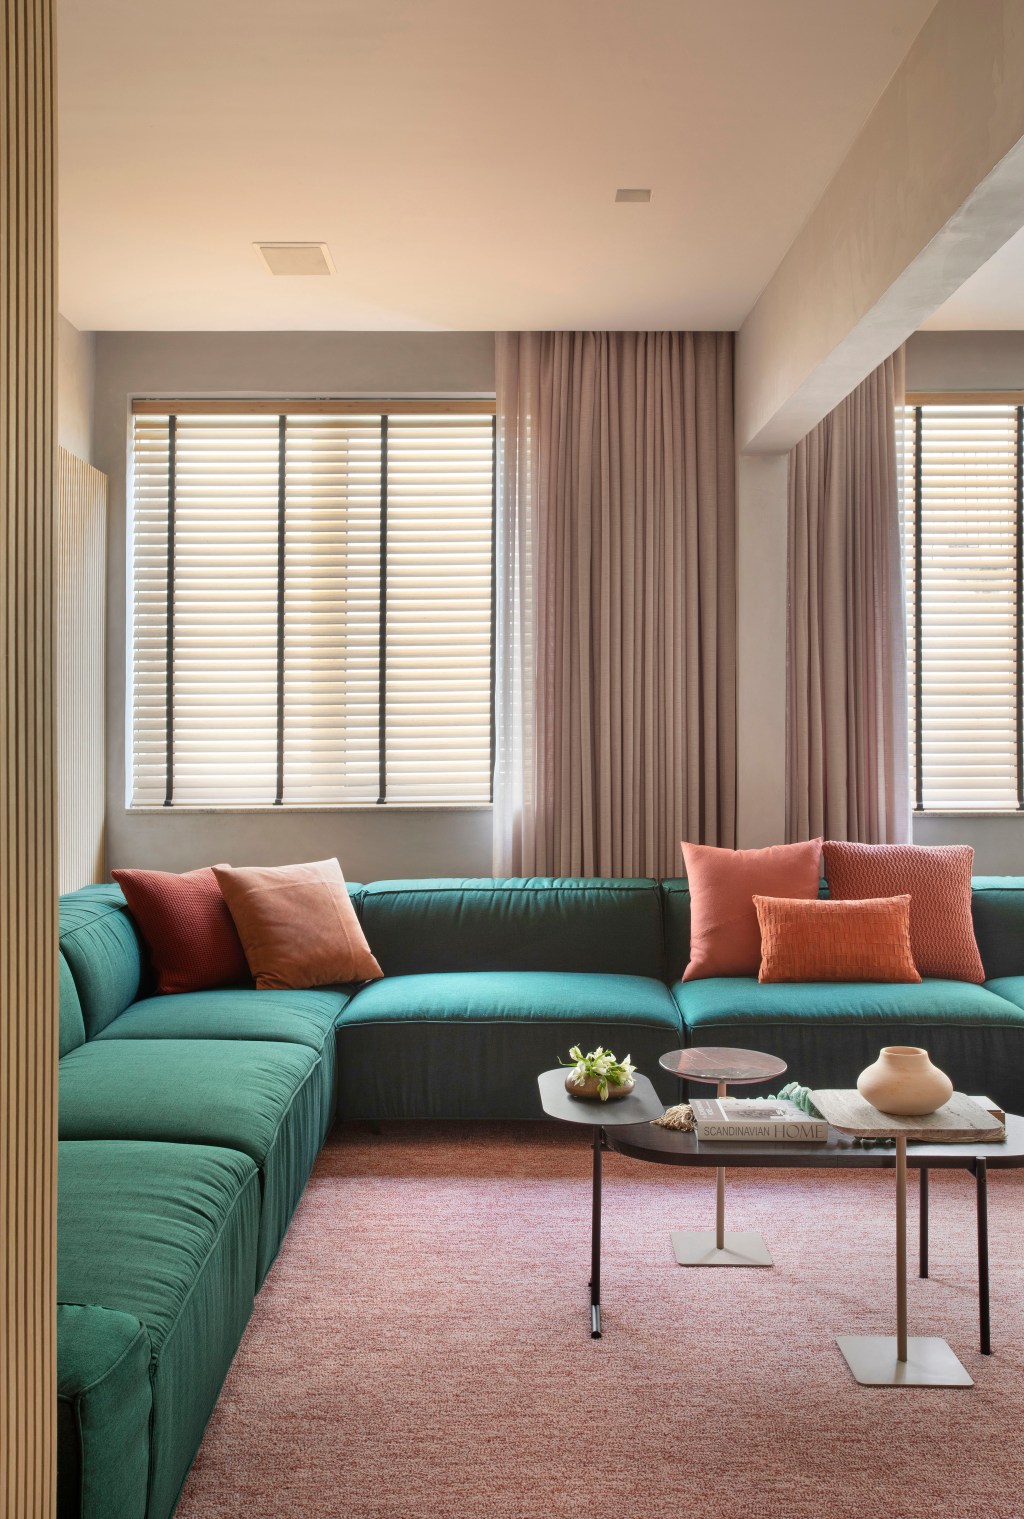 Apê 160 m2 cara de casa paleta verde rosa néons up3 arquitetura decoração sala sala estar tv sofa tapete mesa cortina